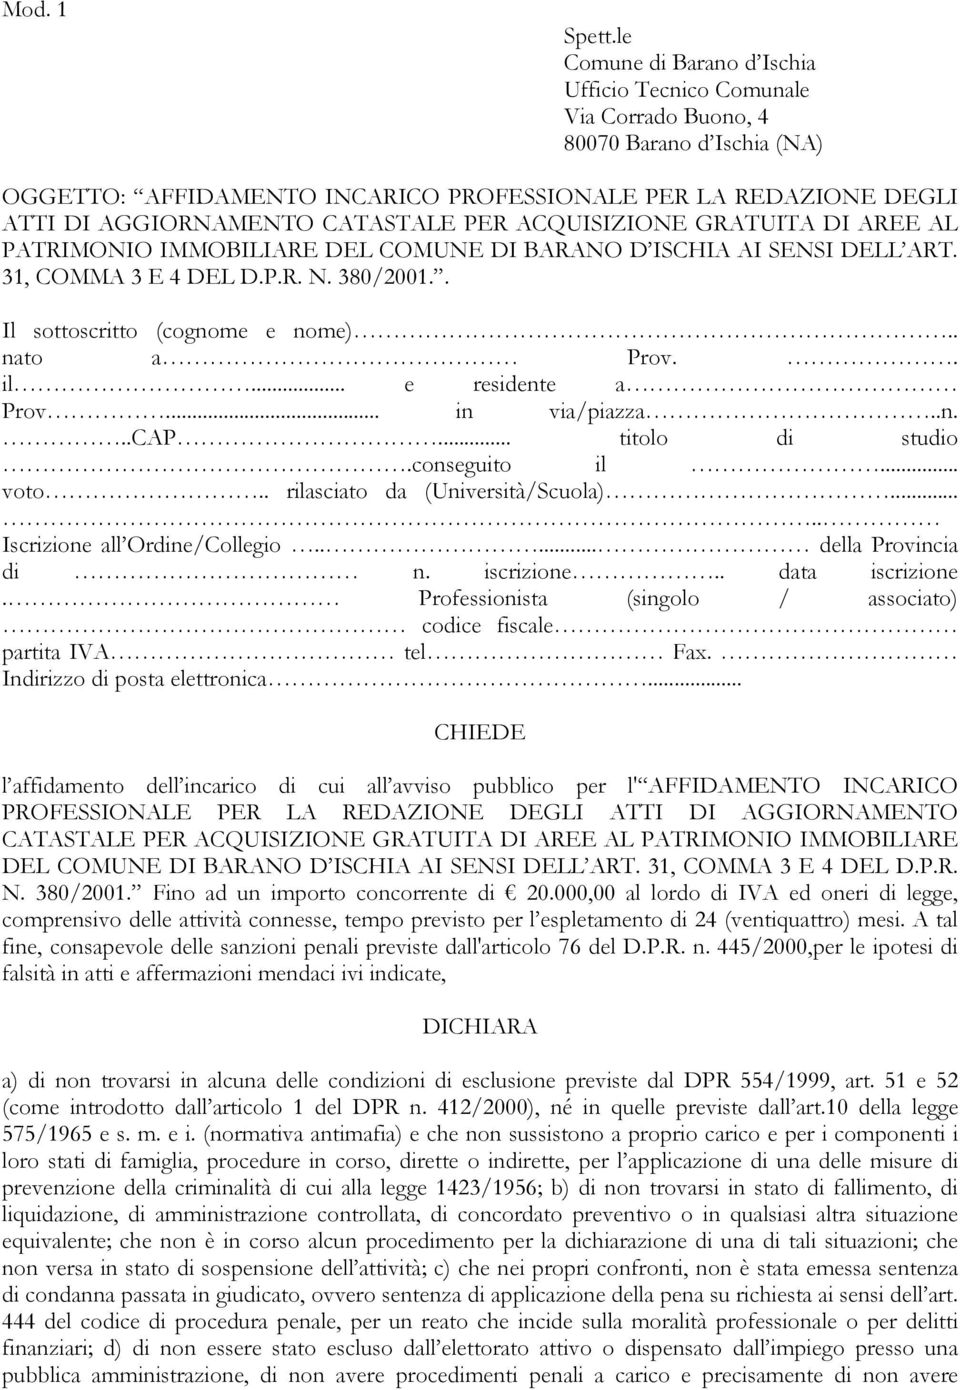 CATASTALE PER ACQUISIZIONE GRATUITA DI AREE AL PATRIMONIO IMMOBILIARE DEL COMUNE DI BARANO D ISCHIA AI SENSI DELL ART. 31, COMMA 3 E 4 DEL D.P.R. N. 380/2001.. Il sottoscritto (cognome e nome).